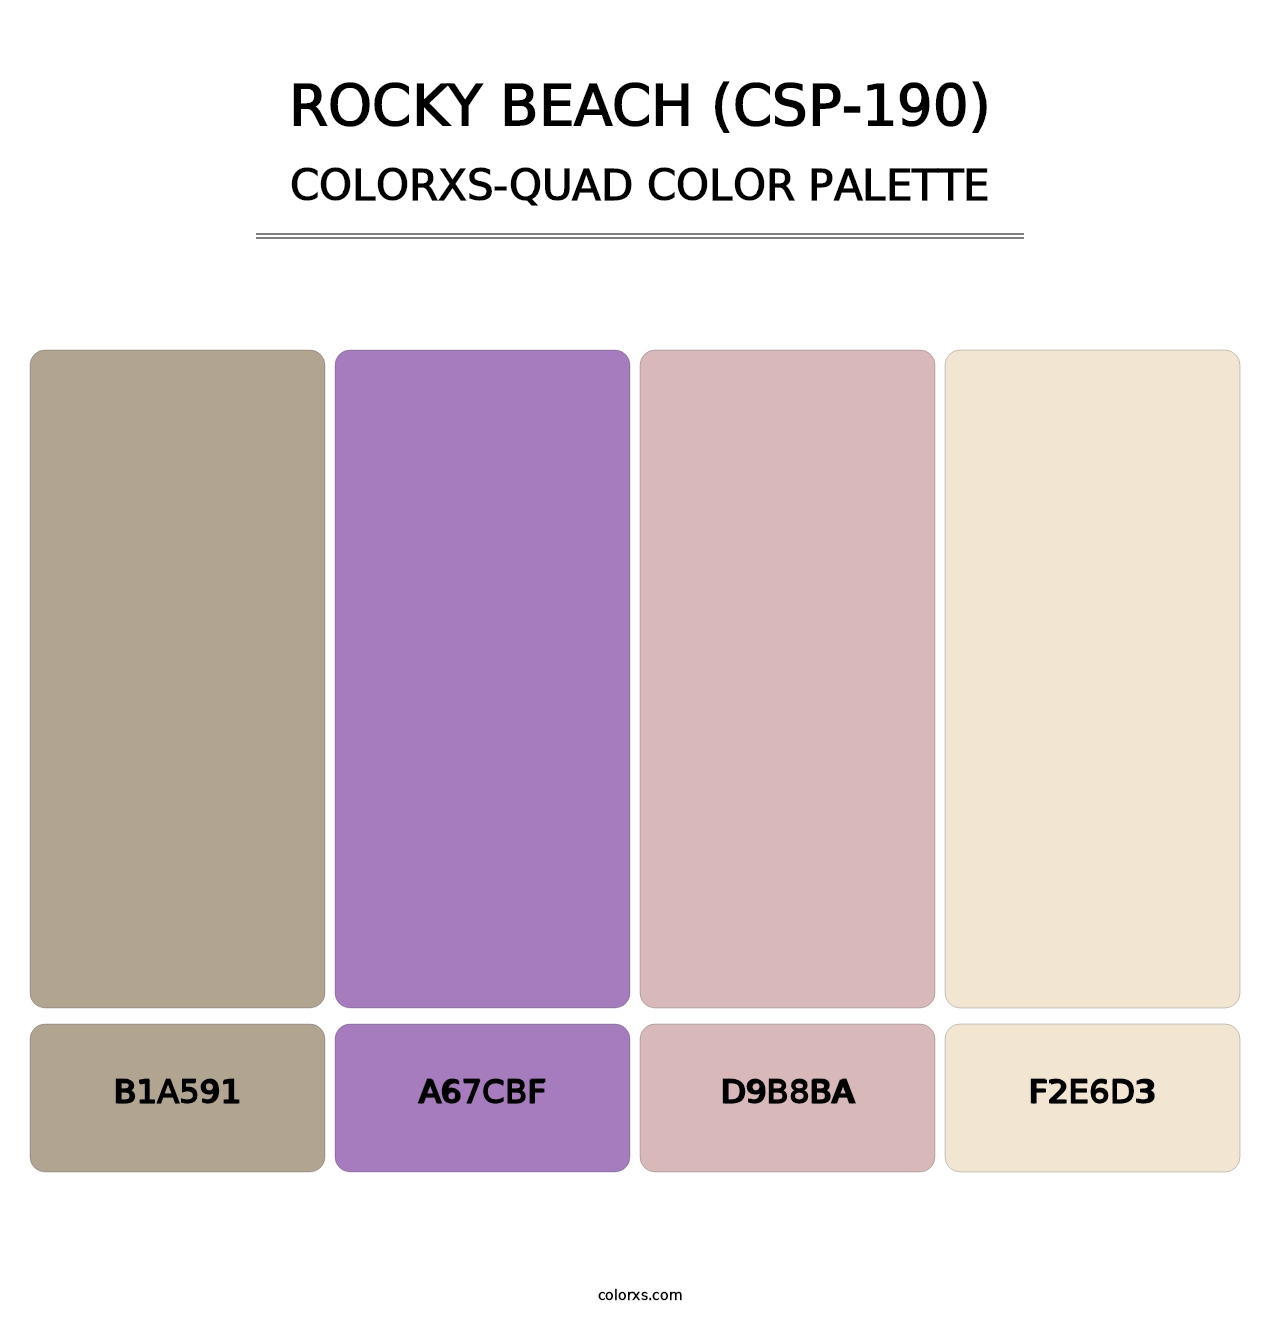 Rocky Beach (CSP-190) - Colorxs Quad Palette